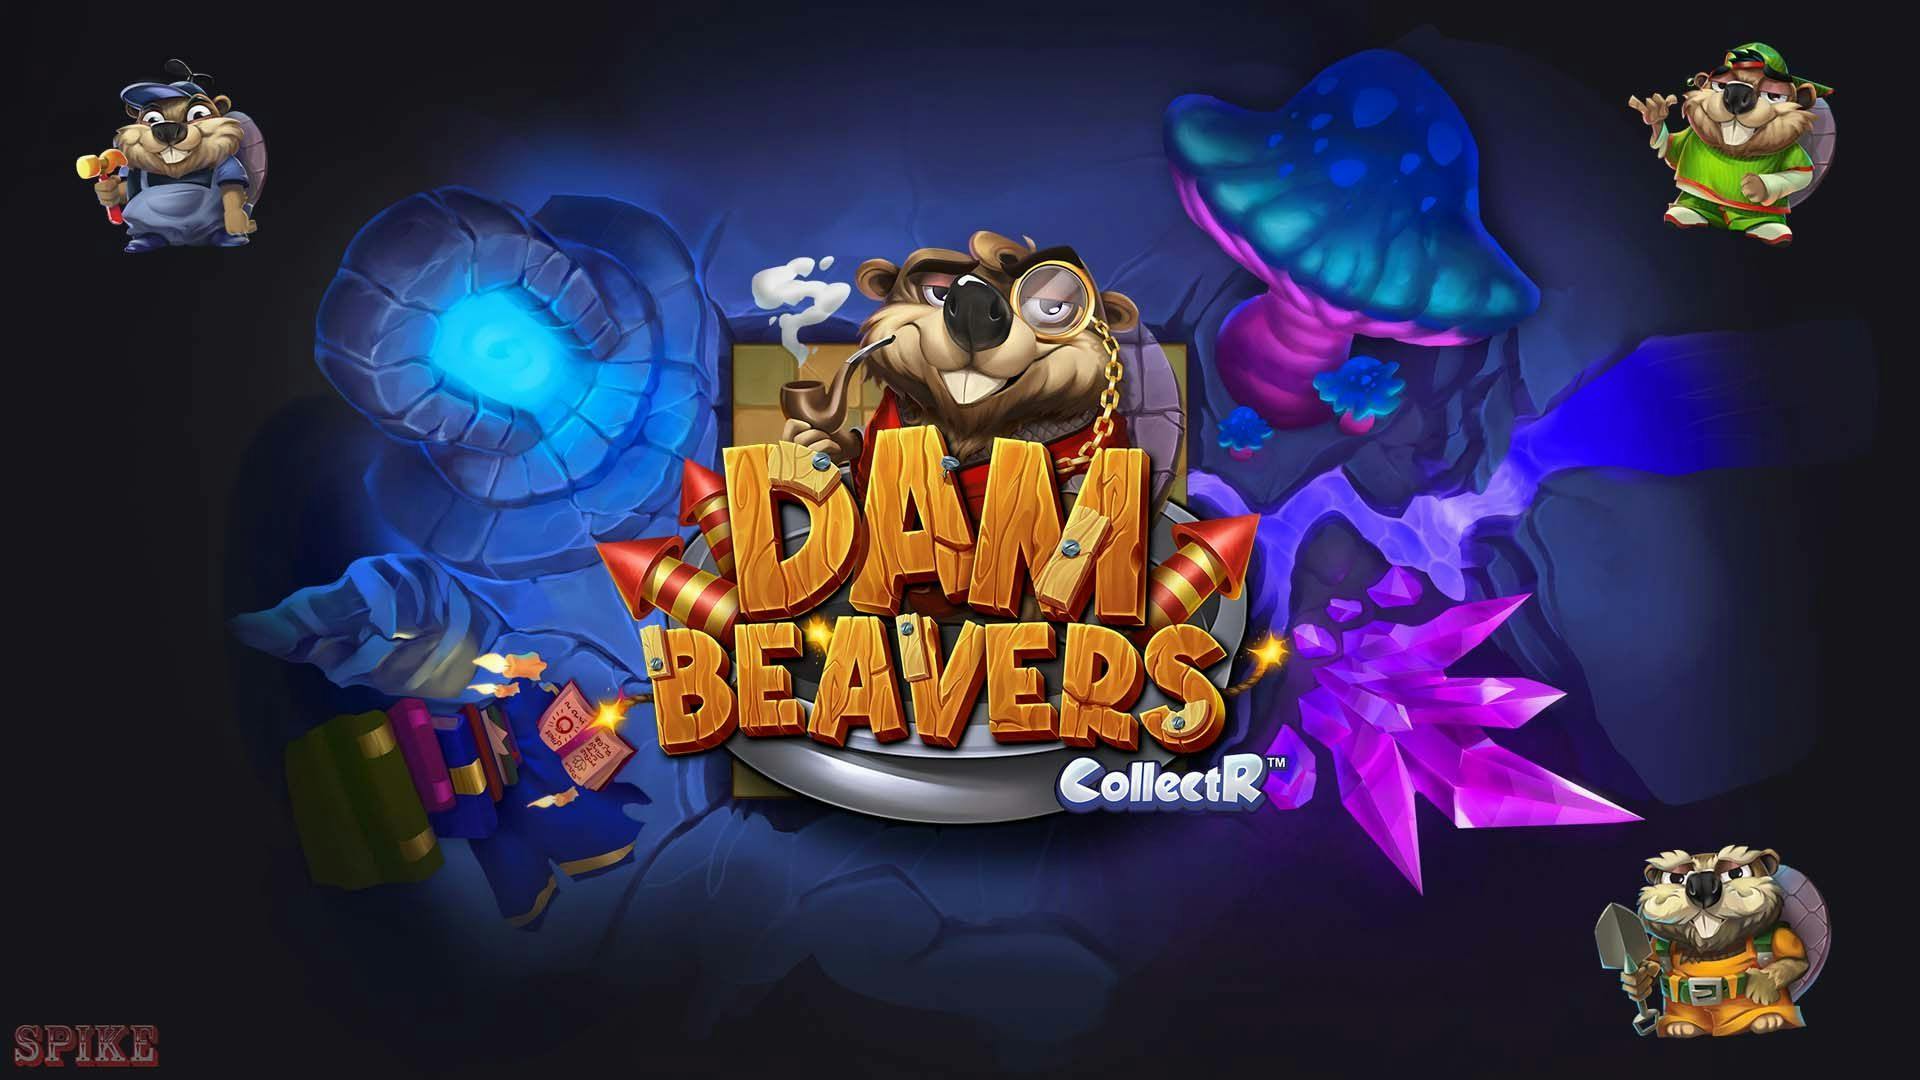 Dam Beavers Slot Gratis